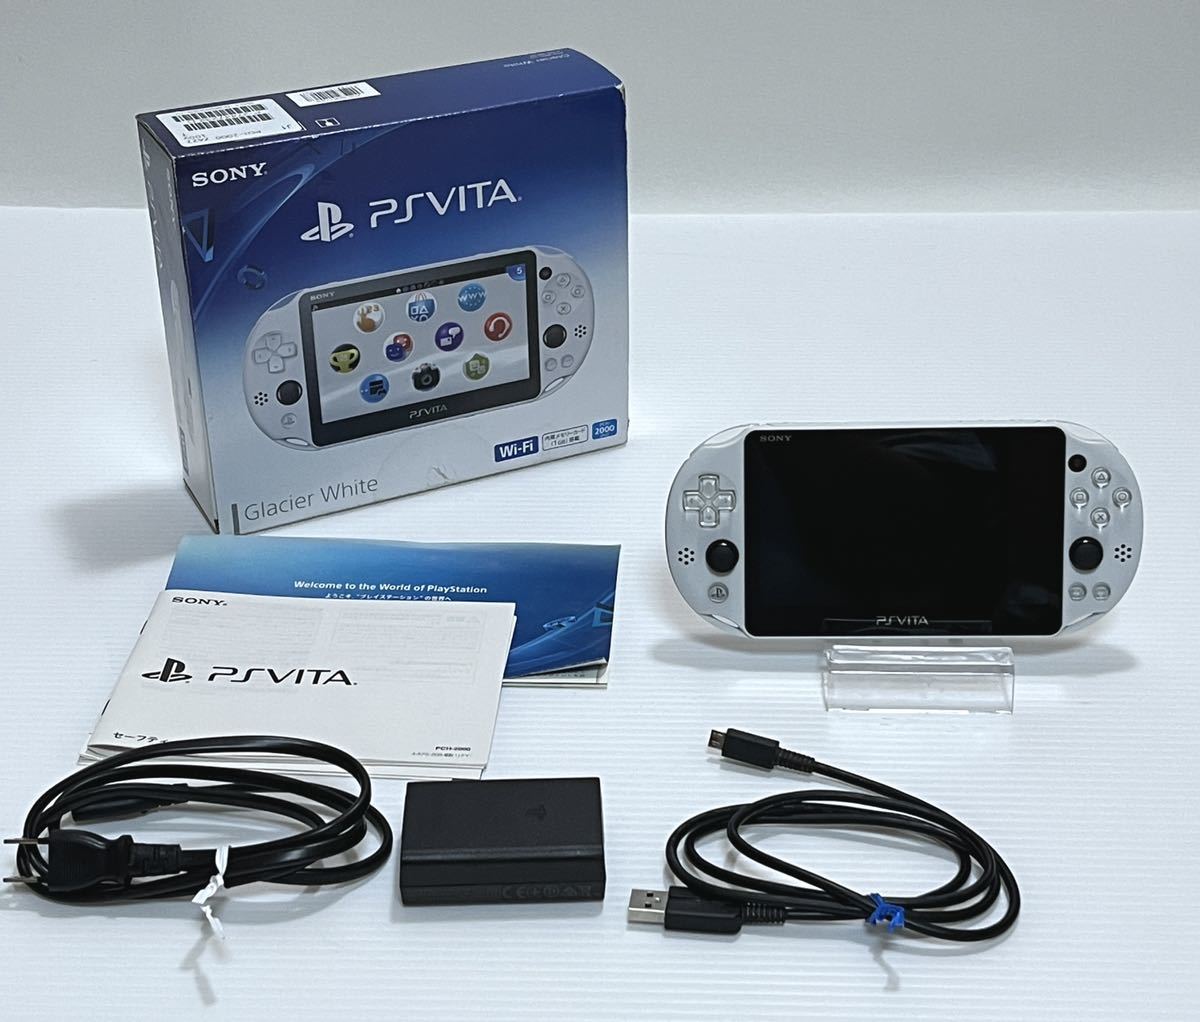 メール便送料無料 PlayStation pch-2000za22 ビータ ヴィータ VITA 携帯用ゲーム本体